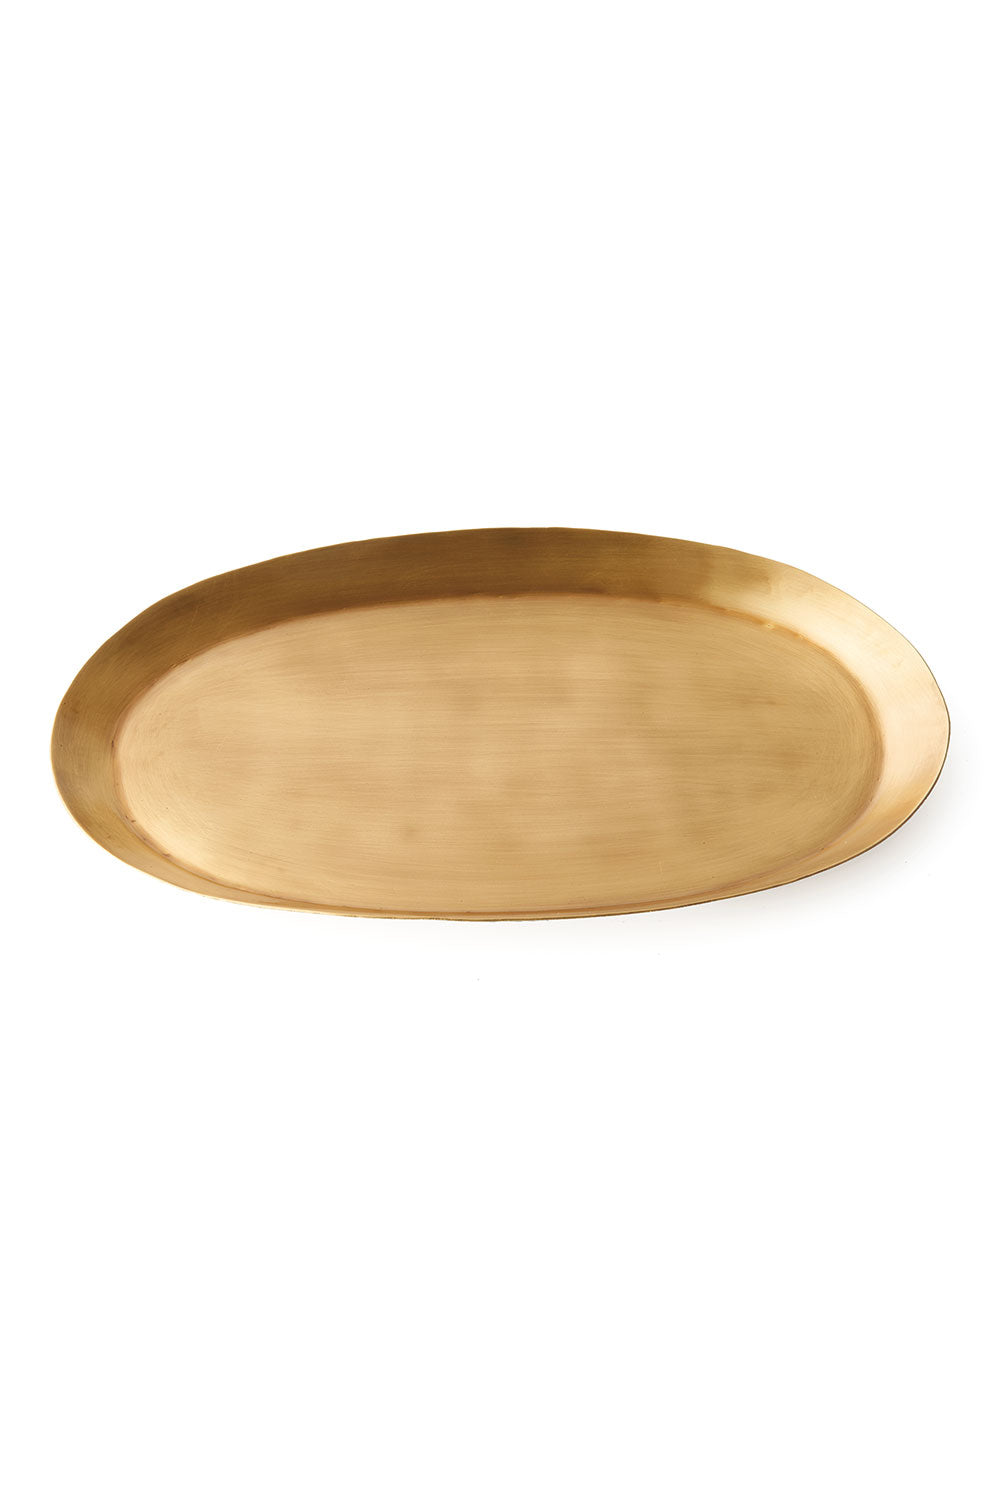 brass oval tray - medium – June Home Supply